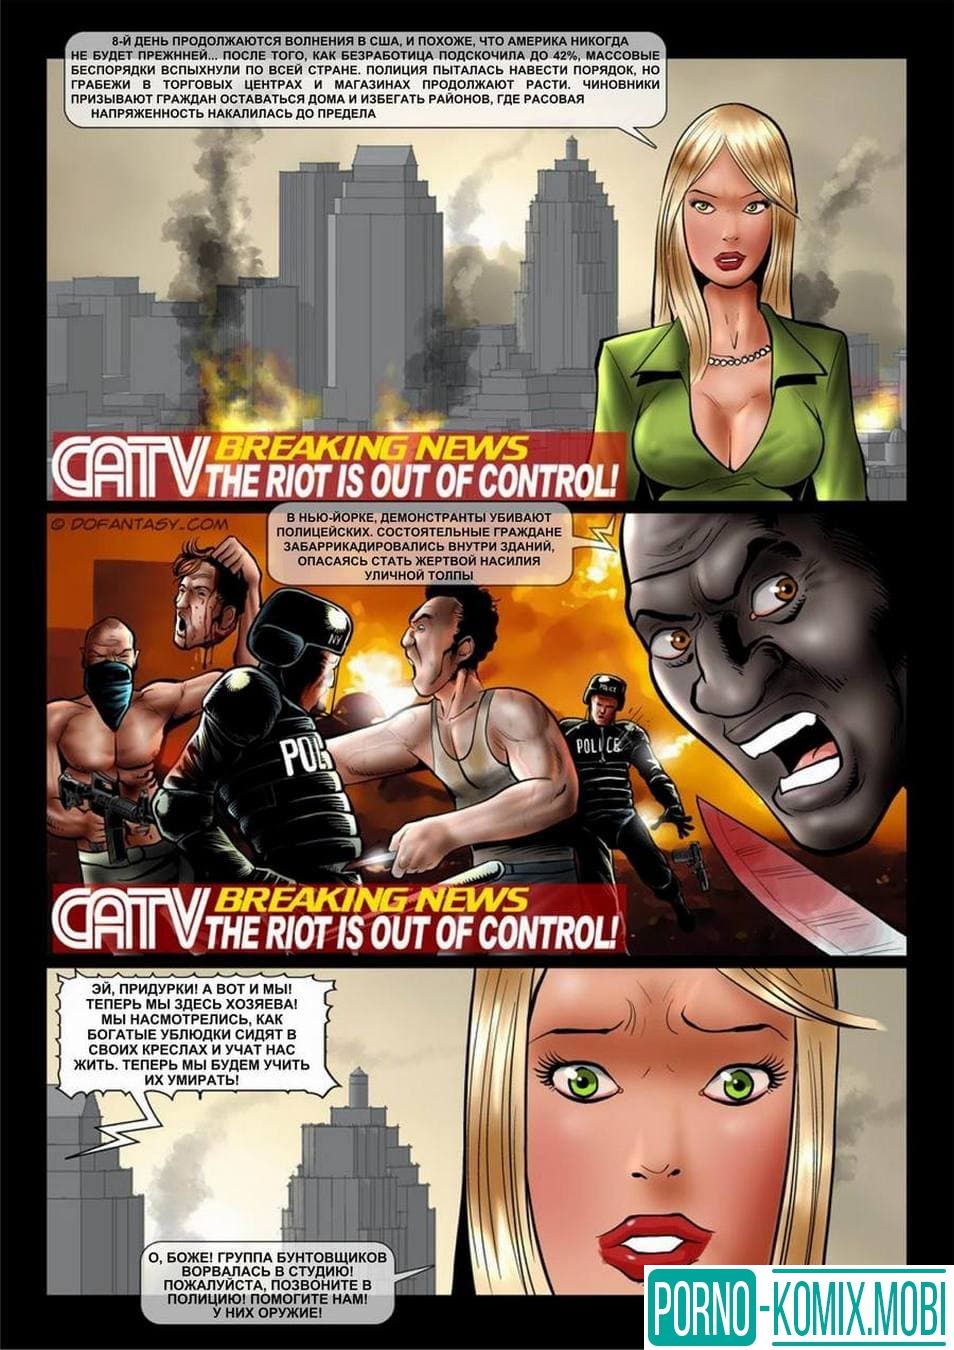 Порно Комиксы С Унижением И Насилием Новые